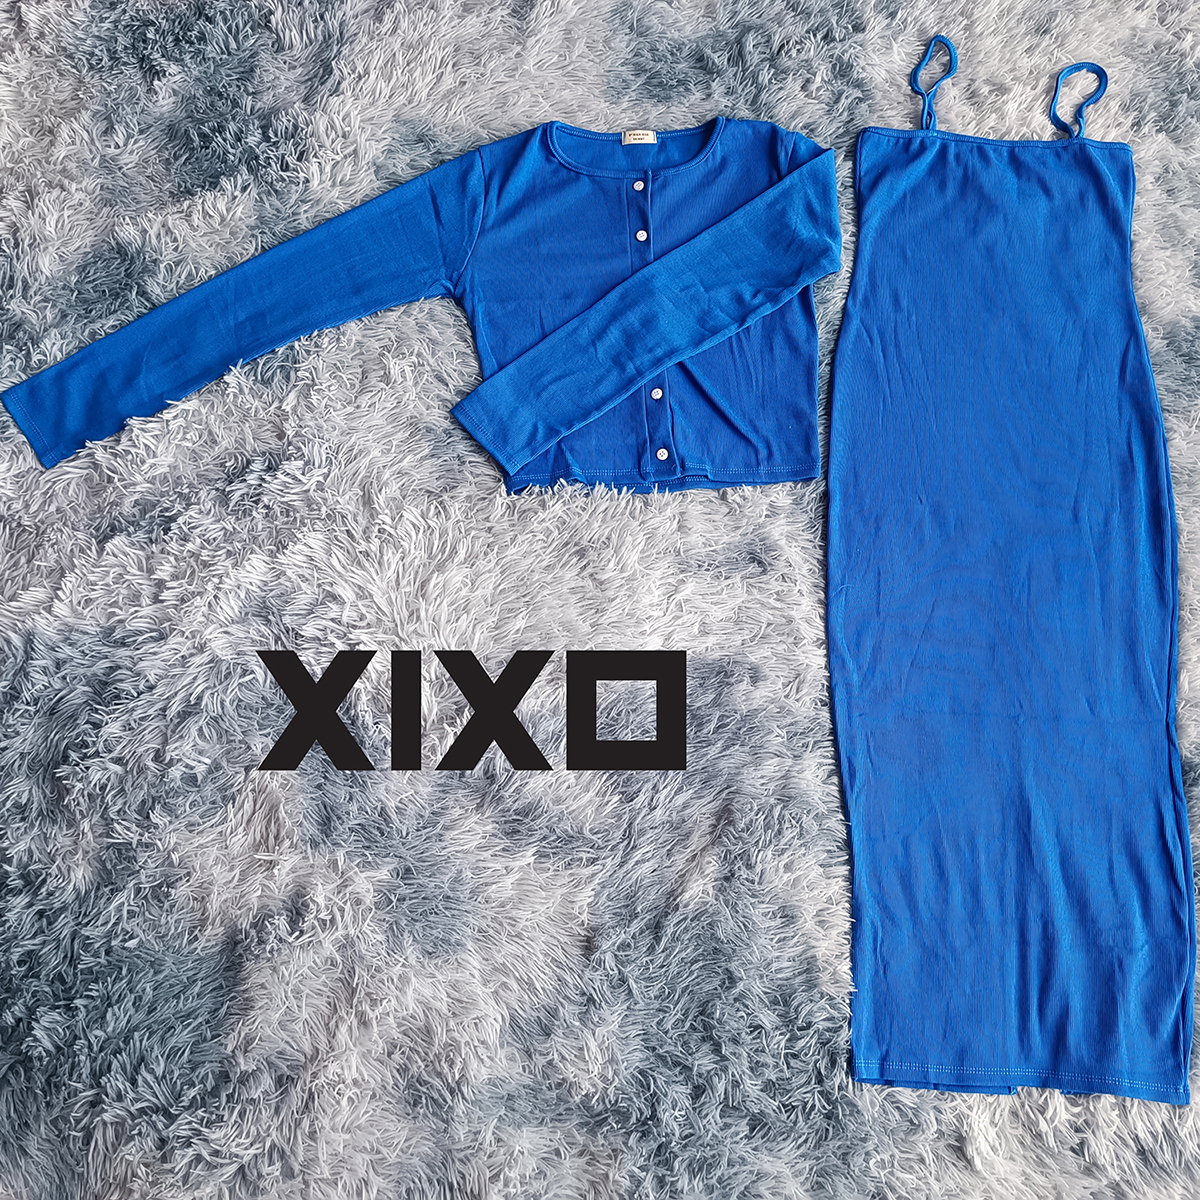 Đầm body 2 dây dáng dài kèm áo khoác dài tay thời trang XIXO cao cấp - DAM0058